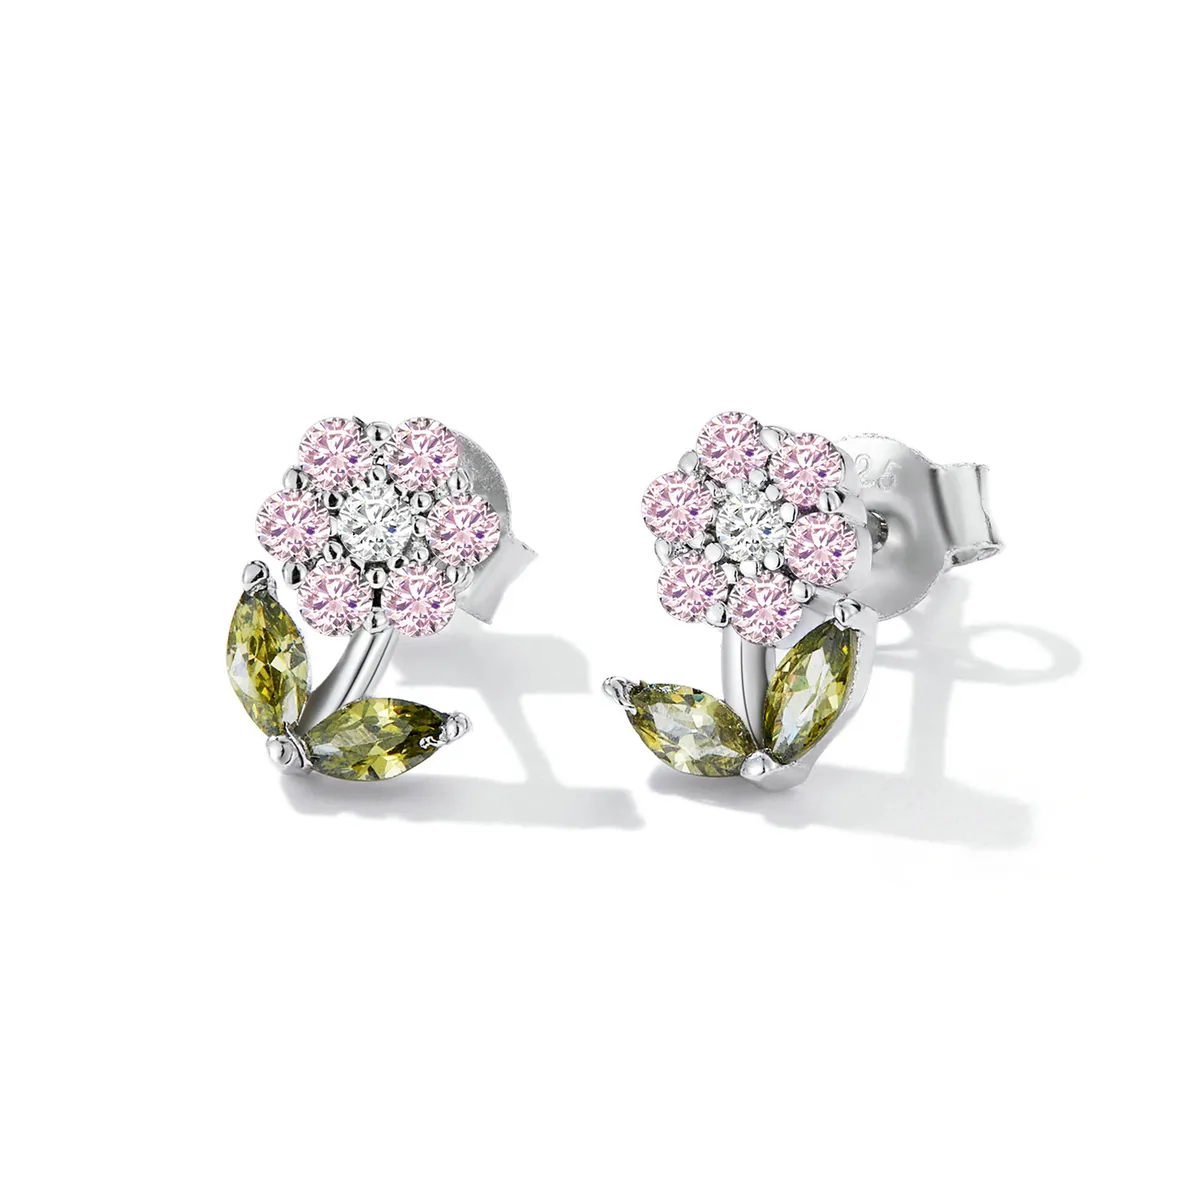 Bijuterii cu șuruburi cu flori delicate în stil Pandora - BSE592-PK